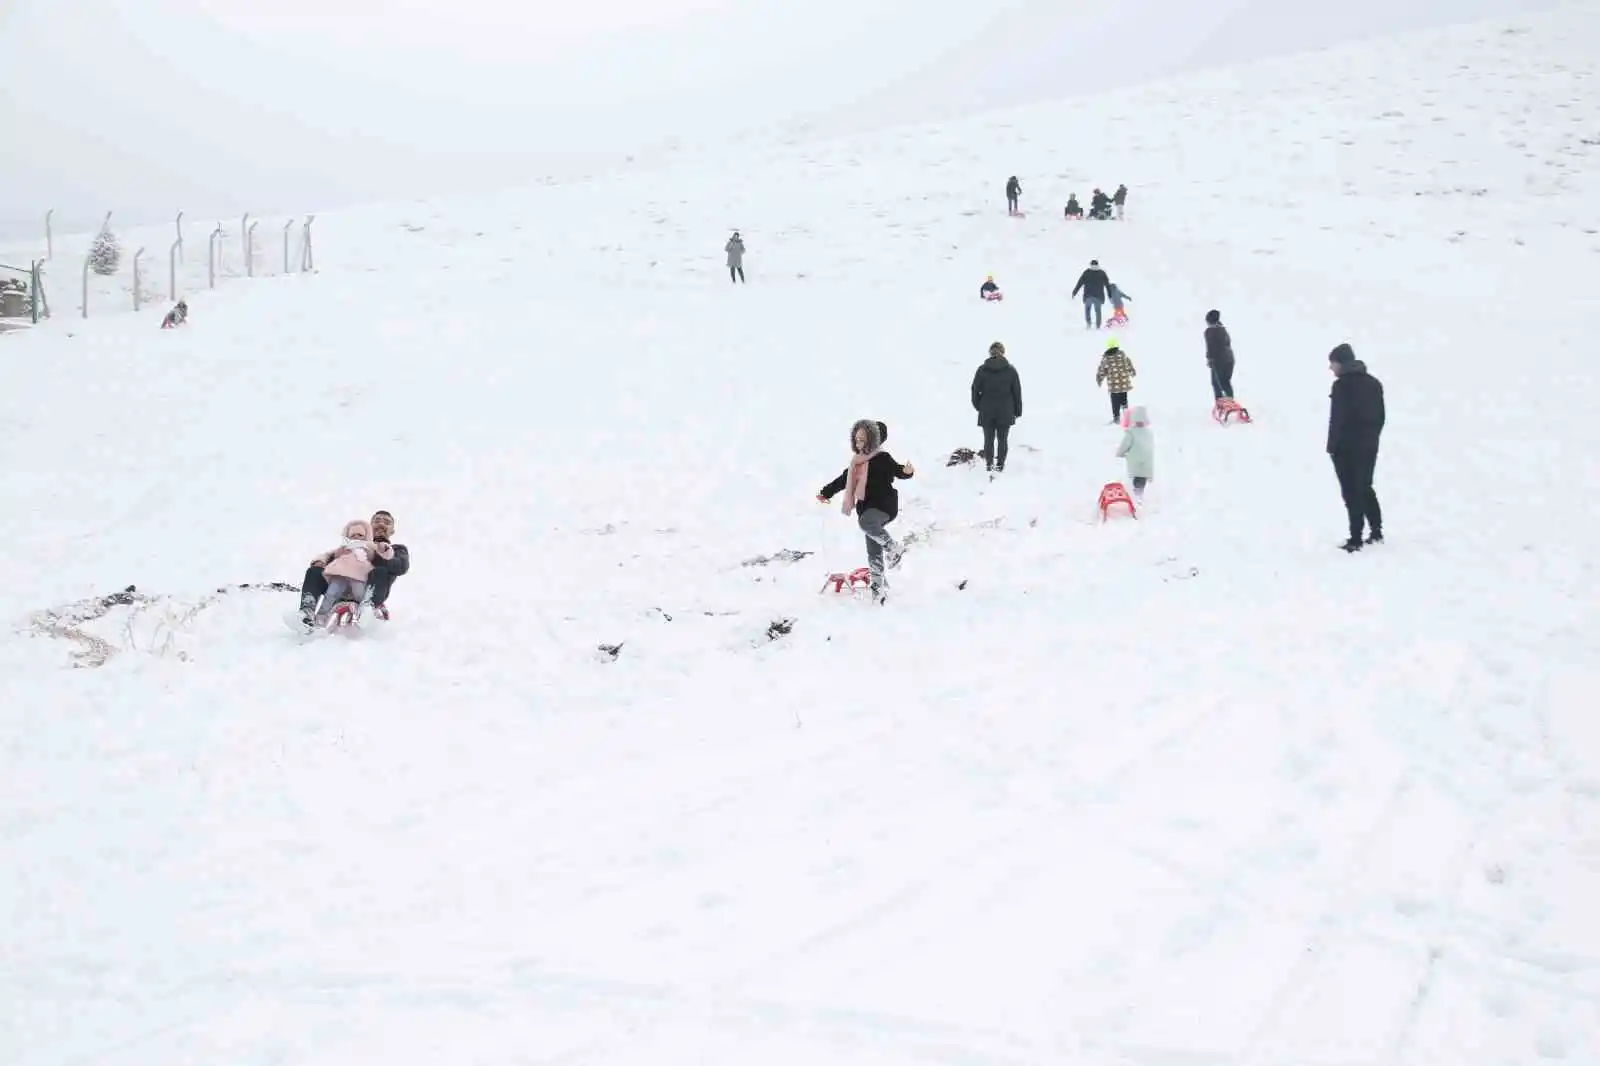 Başkent’te beklenen kar yağışının ardından kayak sezonu açıldı
